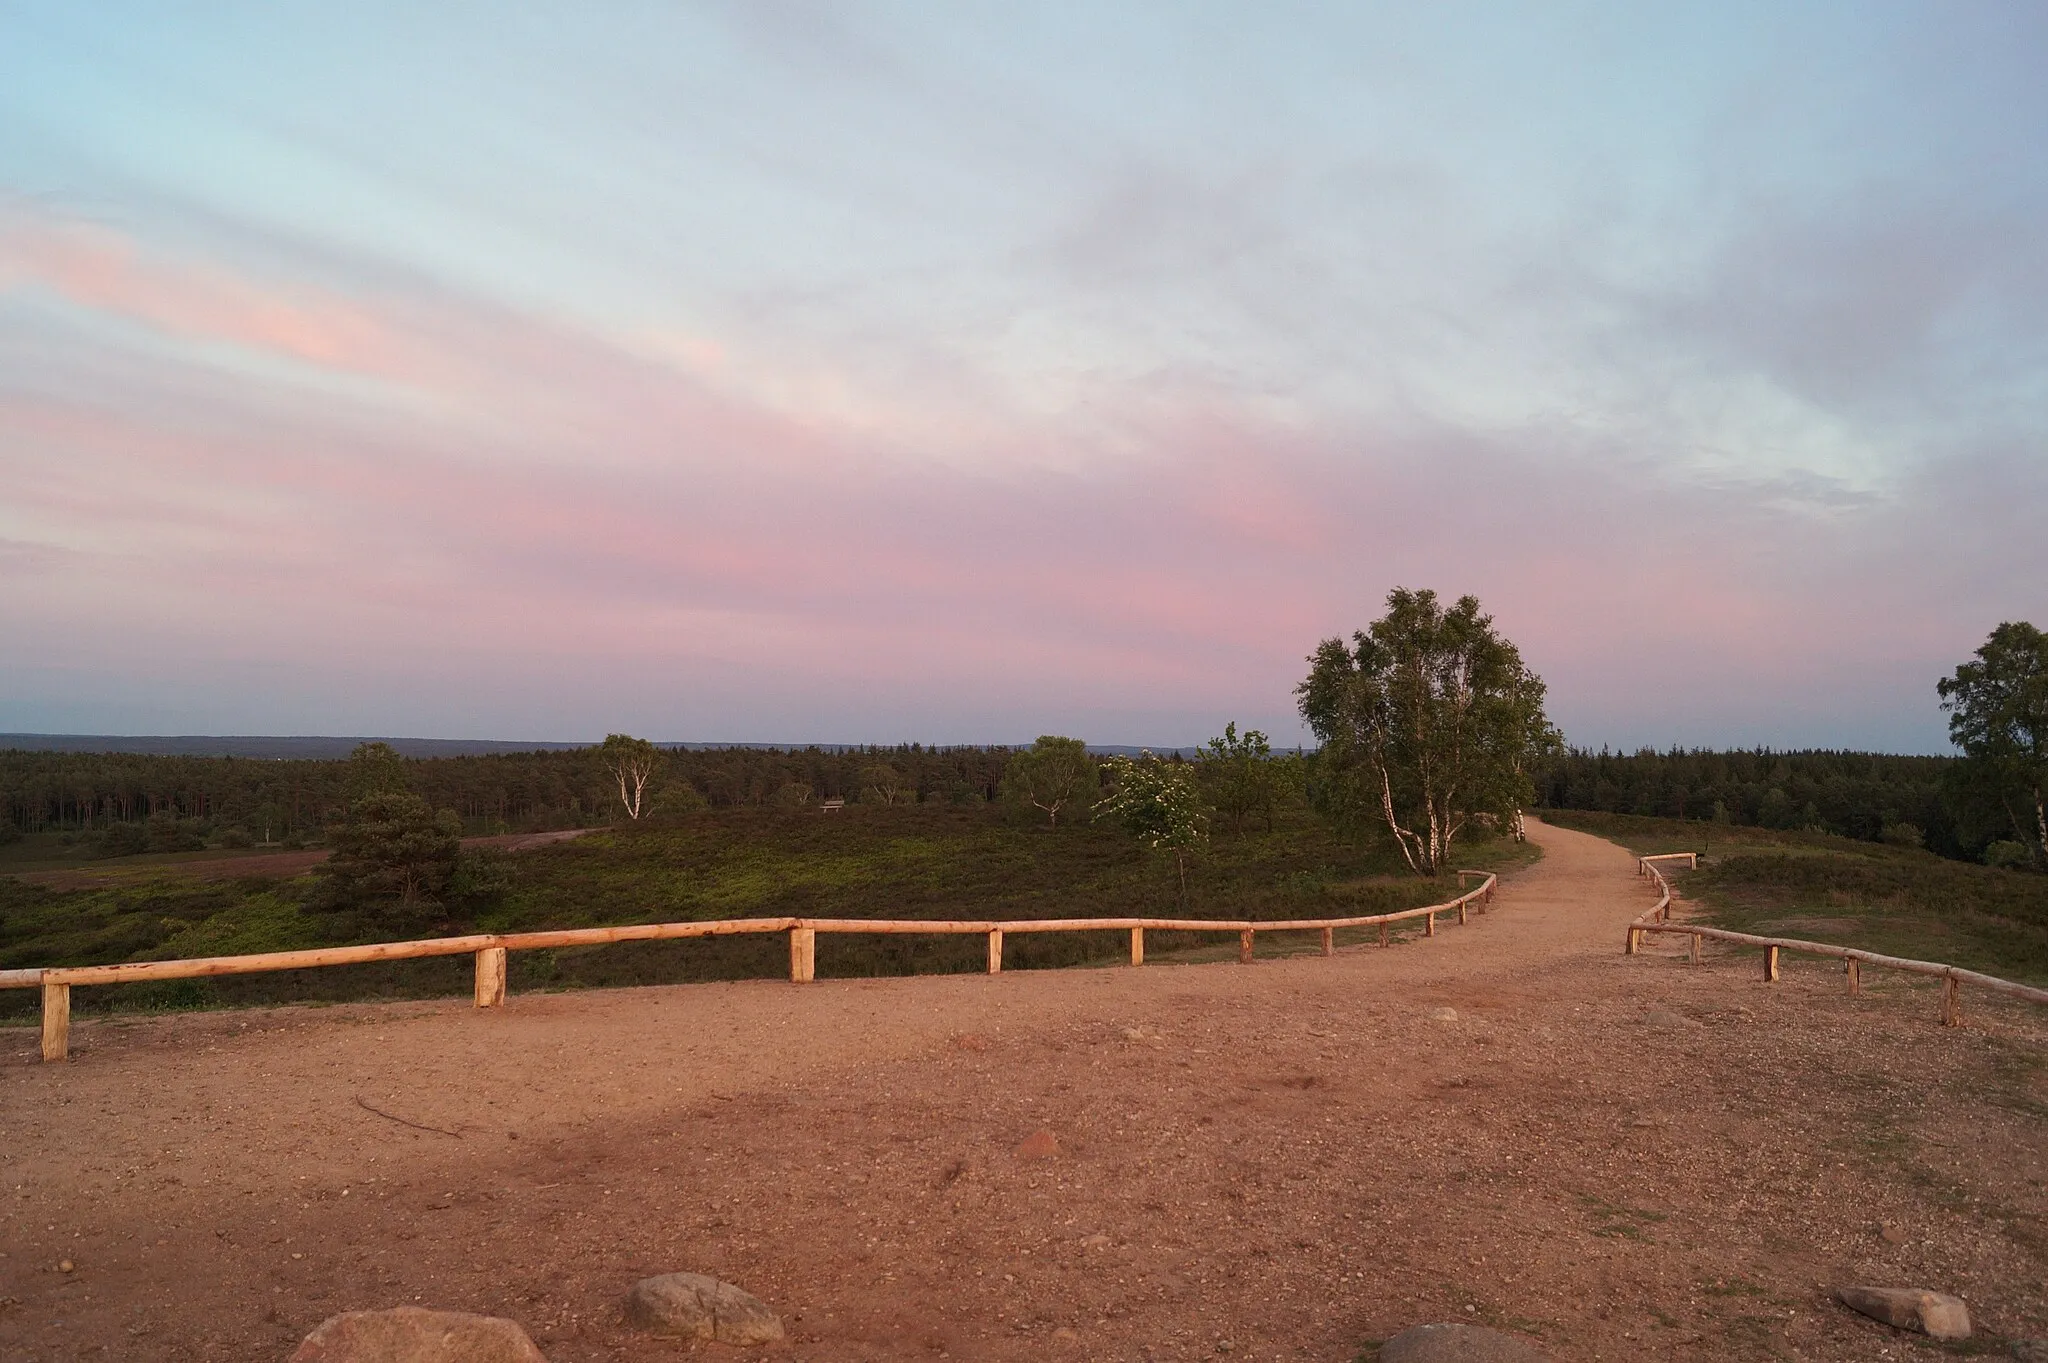 Photo showing: Auf der Spitze des Brunsbergs beim Sonnenuntergang. Zu sehen ist der Weg auf dem Brunsberg in die Richtung Holm-Seppensen, sowie die Wegbegrenzung, die Heidekrautgewächse und die Wälder. Im Naturschutzgebiet Brunsberg (Lohberge).